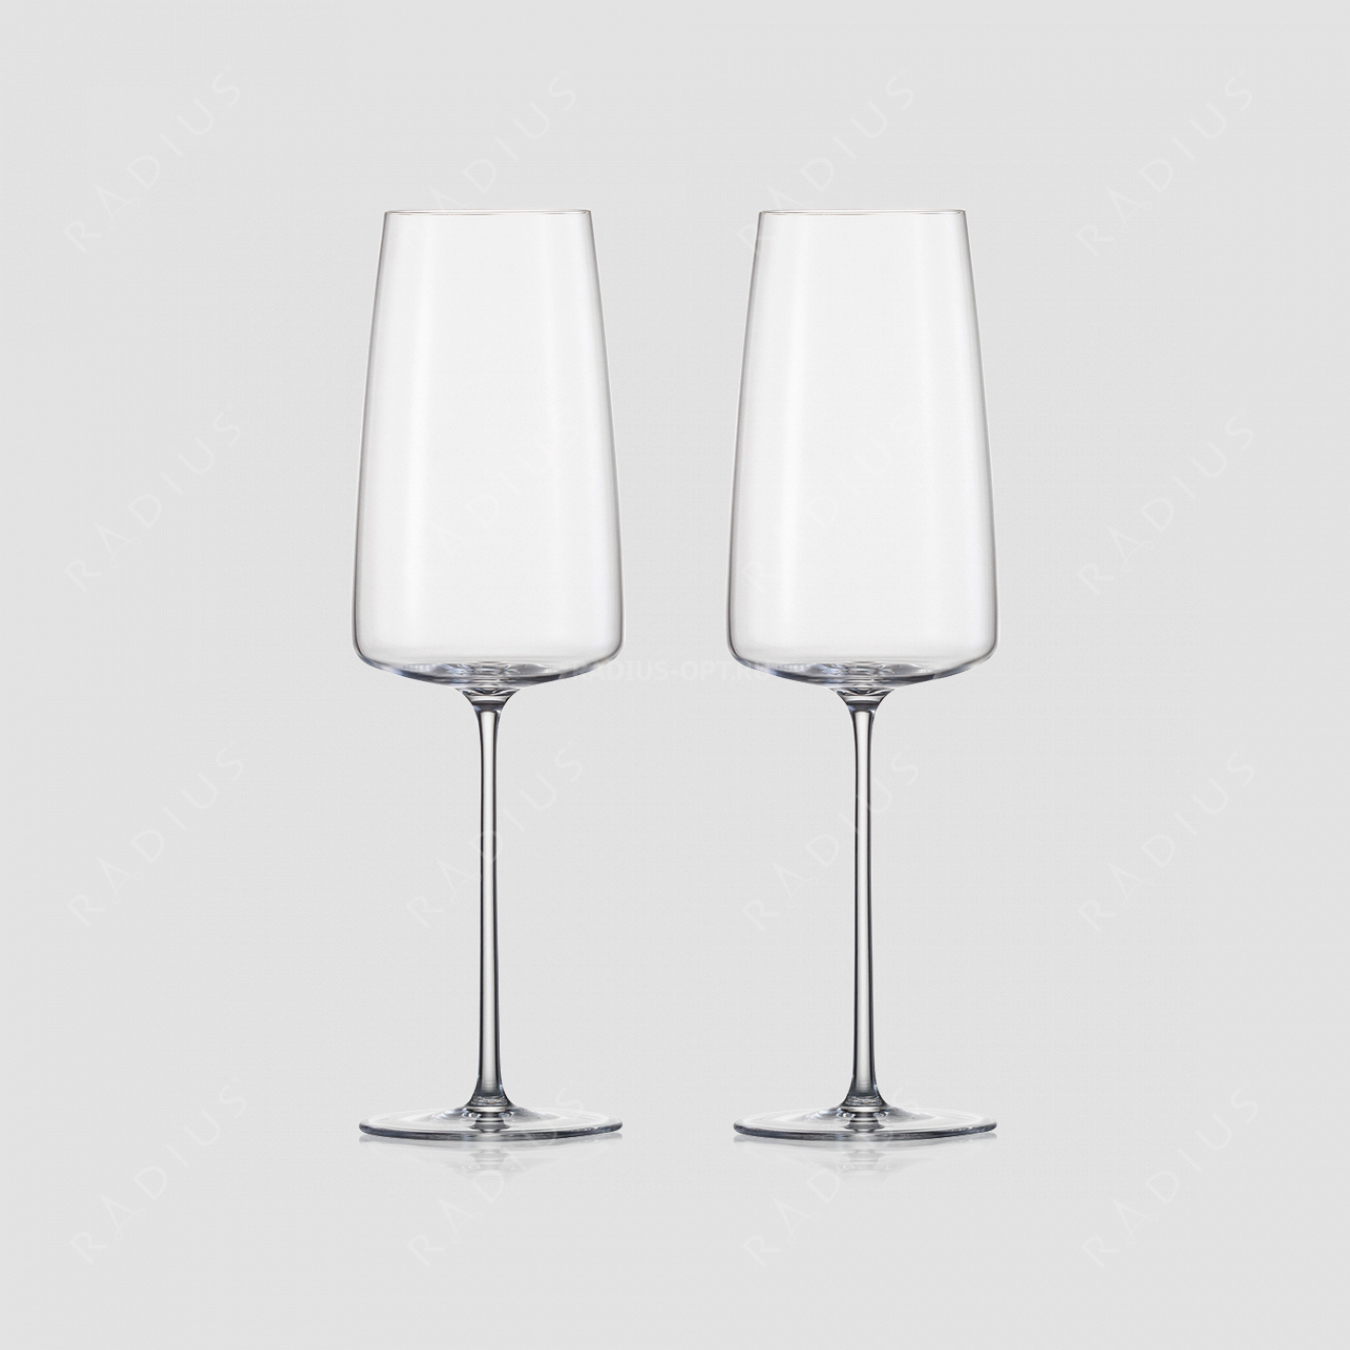 Набор фужеров для игристых вин Light & Fresh, ручная работа, объем 407 мл, 2 шт, серия Simplify, ZWIESEL GLAS, Германия